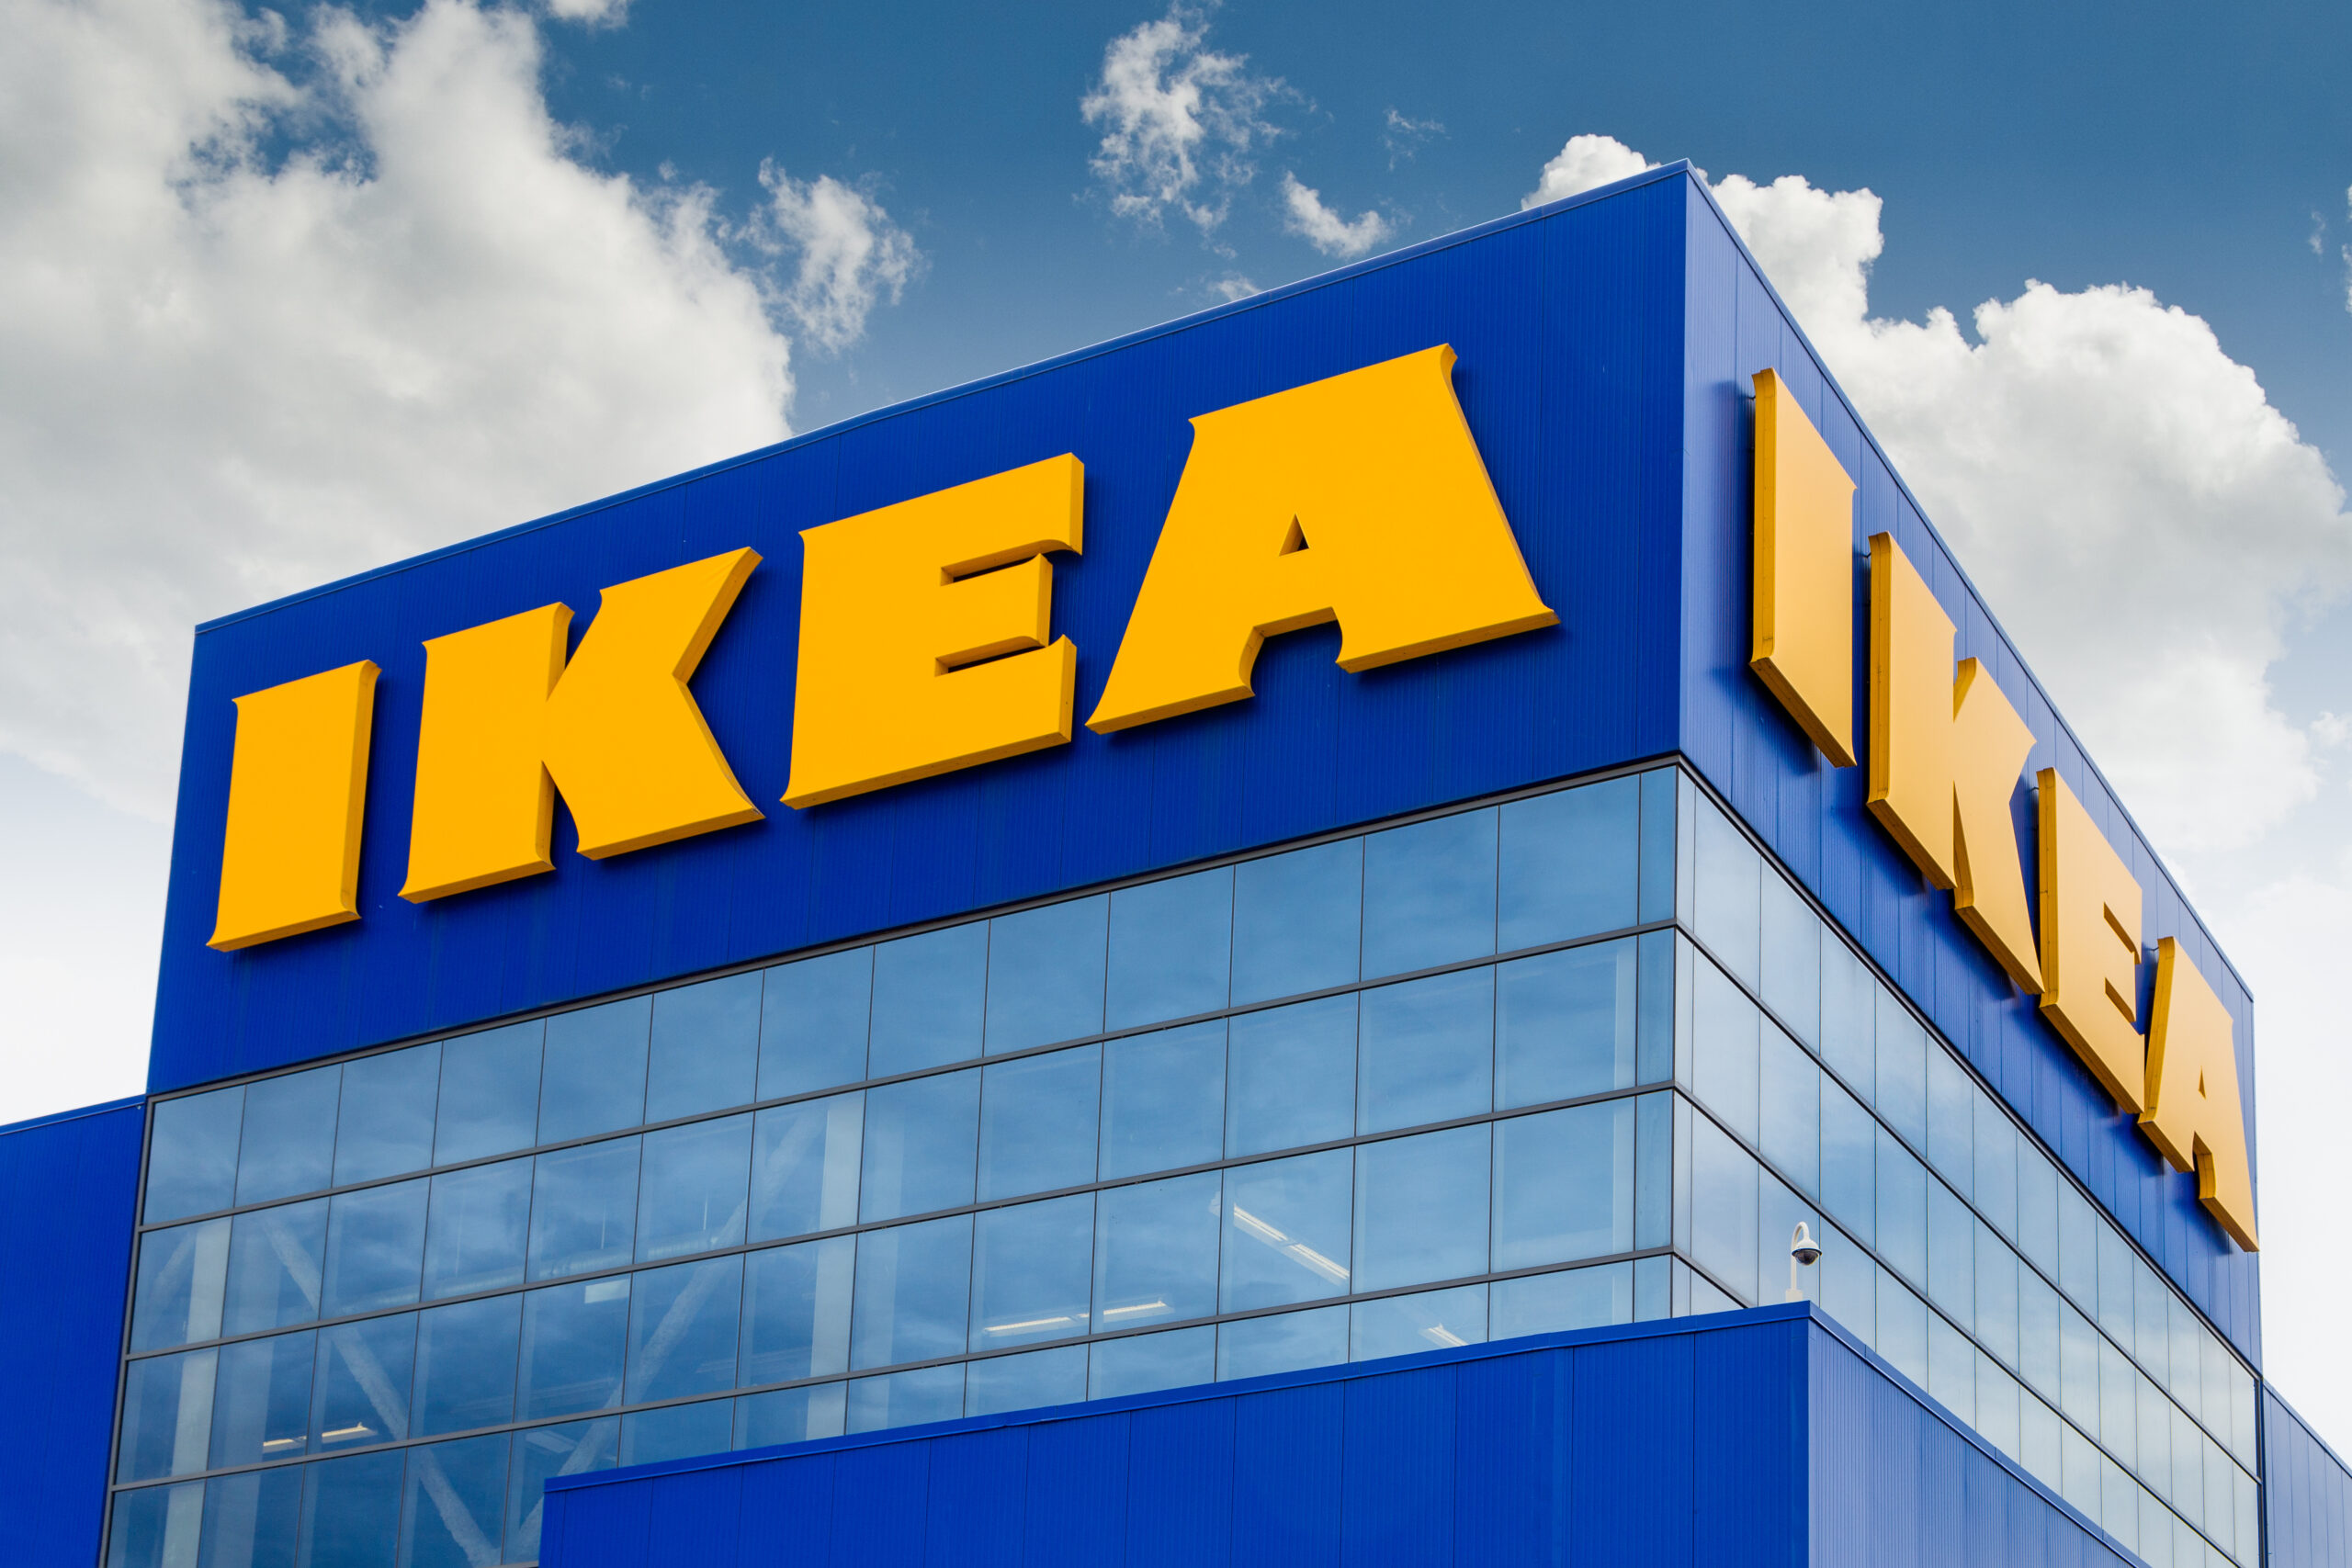 Ikea affitta monolocale a 77 centesimi. Tutto in 10 metri quadrati. Incredibile